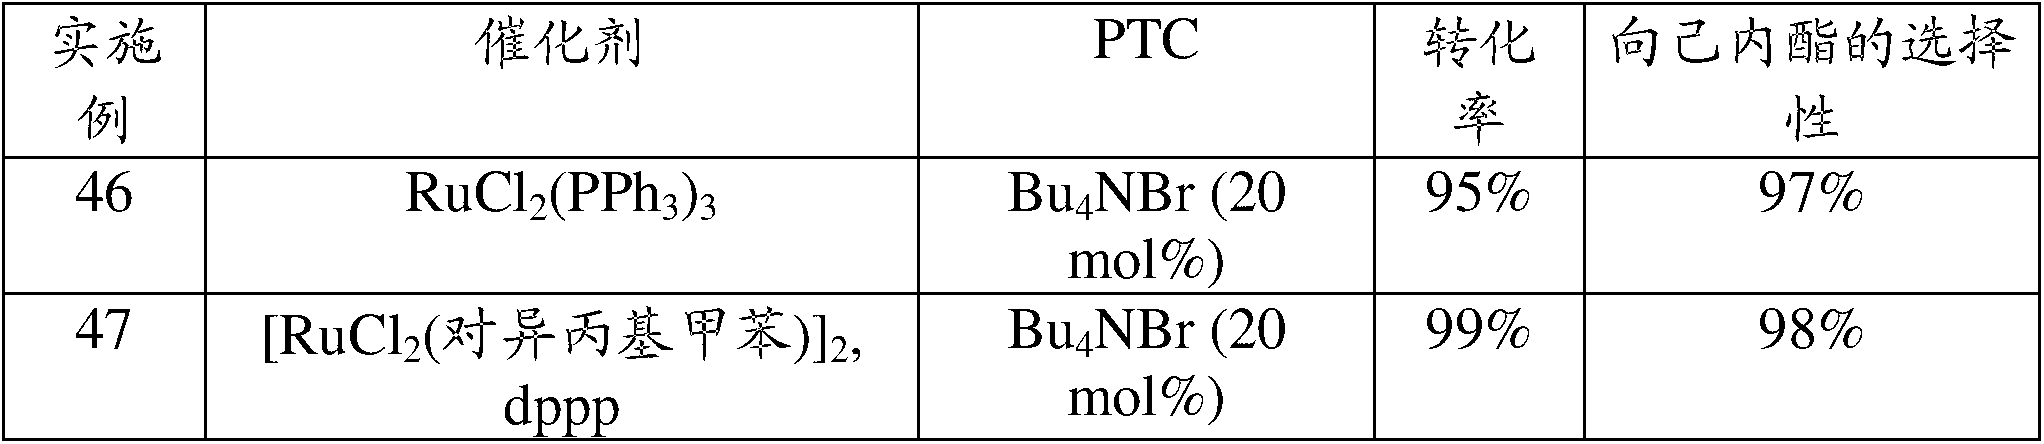 Preparation of caprolactone, caprolactam, 2,5-etrahydrofuran-&lt;wbr/&gt;dimethanol, 1,6-&lt;wbr/&gt;hexanediol or 1,2,6-&lt;wbr/&gt;hexanetriol from 5-&lt;wbr/&gt;hydroxymethyl-&lt;wbr/&gt;2-furfuraldehyde